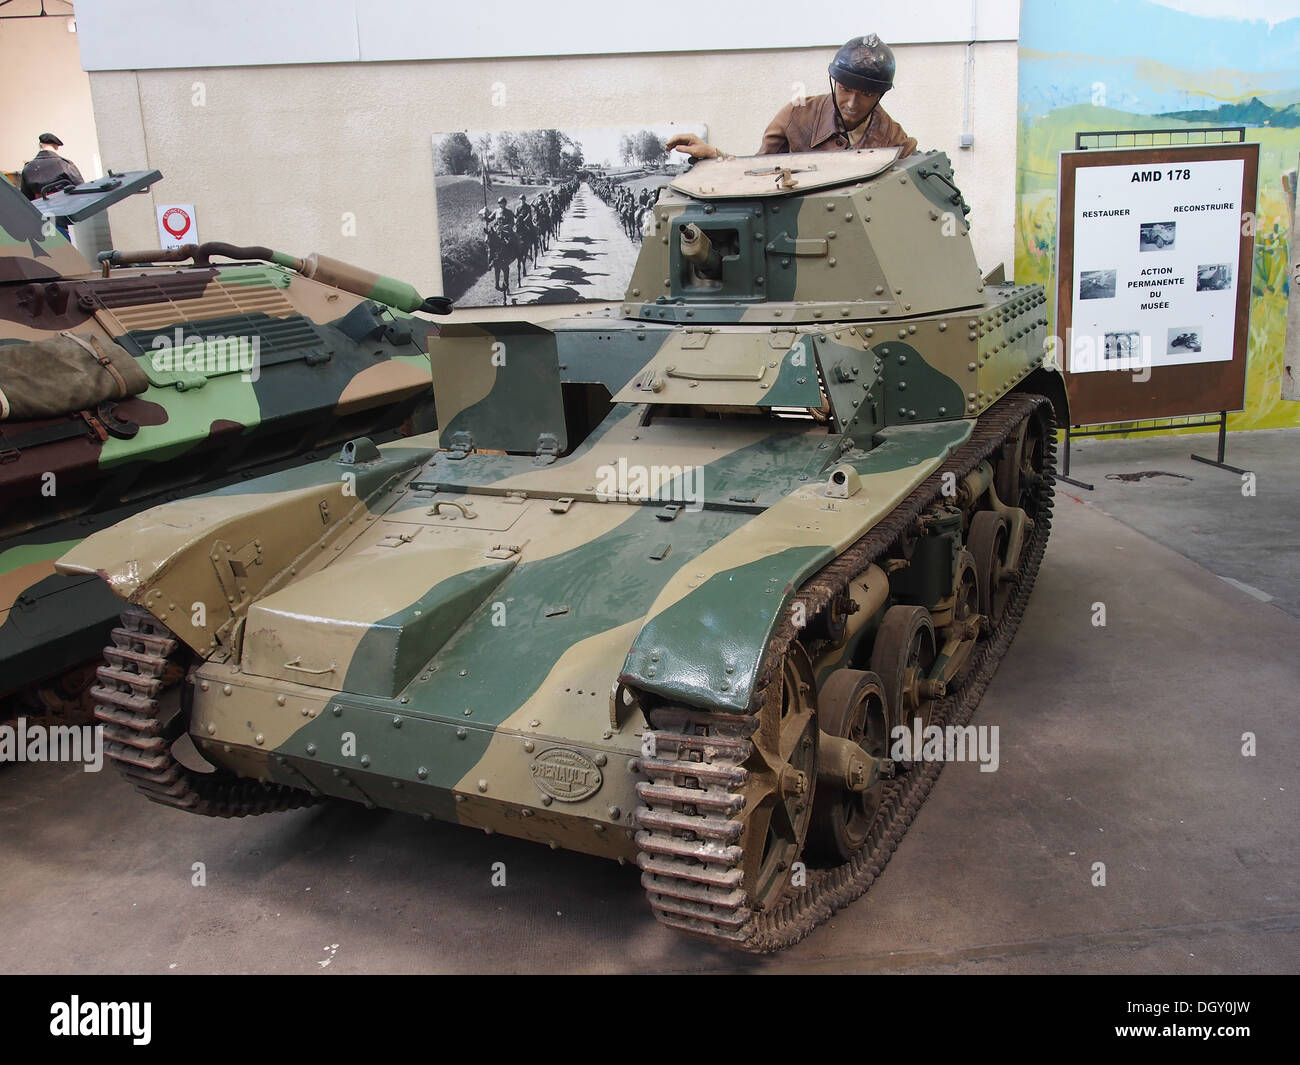 Renault AMR 33, des chars dans le tank museum, Saumur, France, pic-3 Banque D'Images